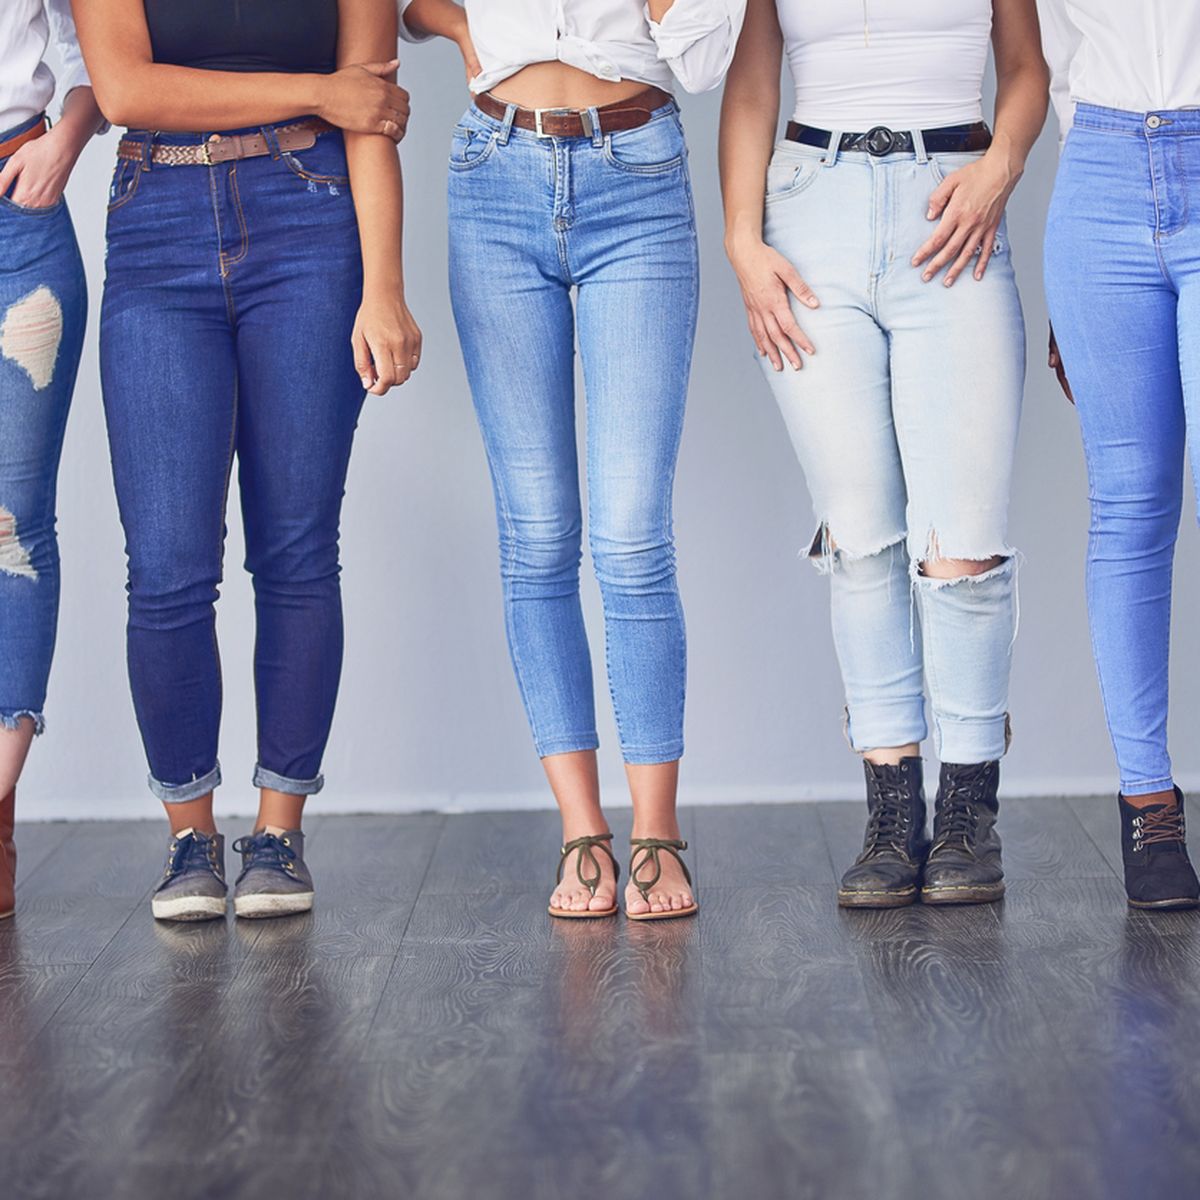 Jeans-Trends: für sind wichtigsten Das die Jeans-Neuheiten 2020 fünf